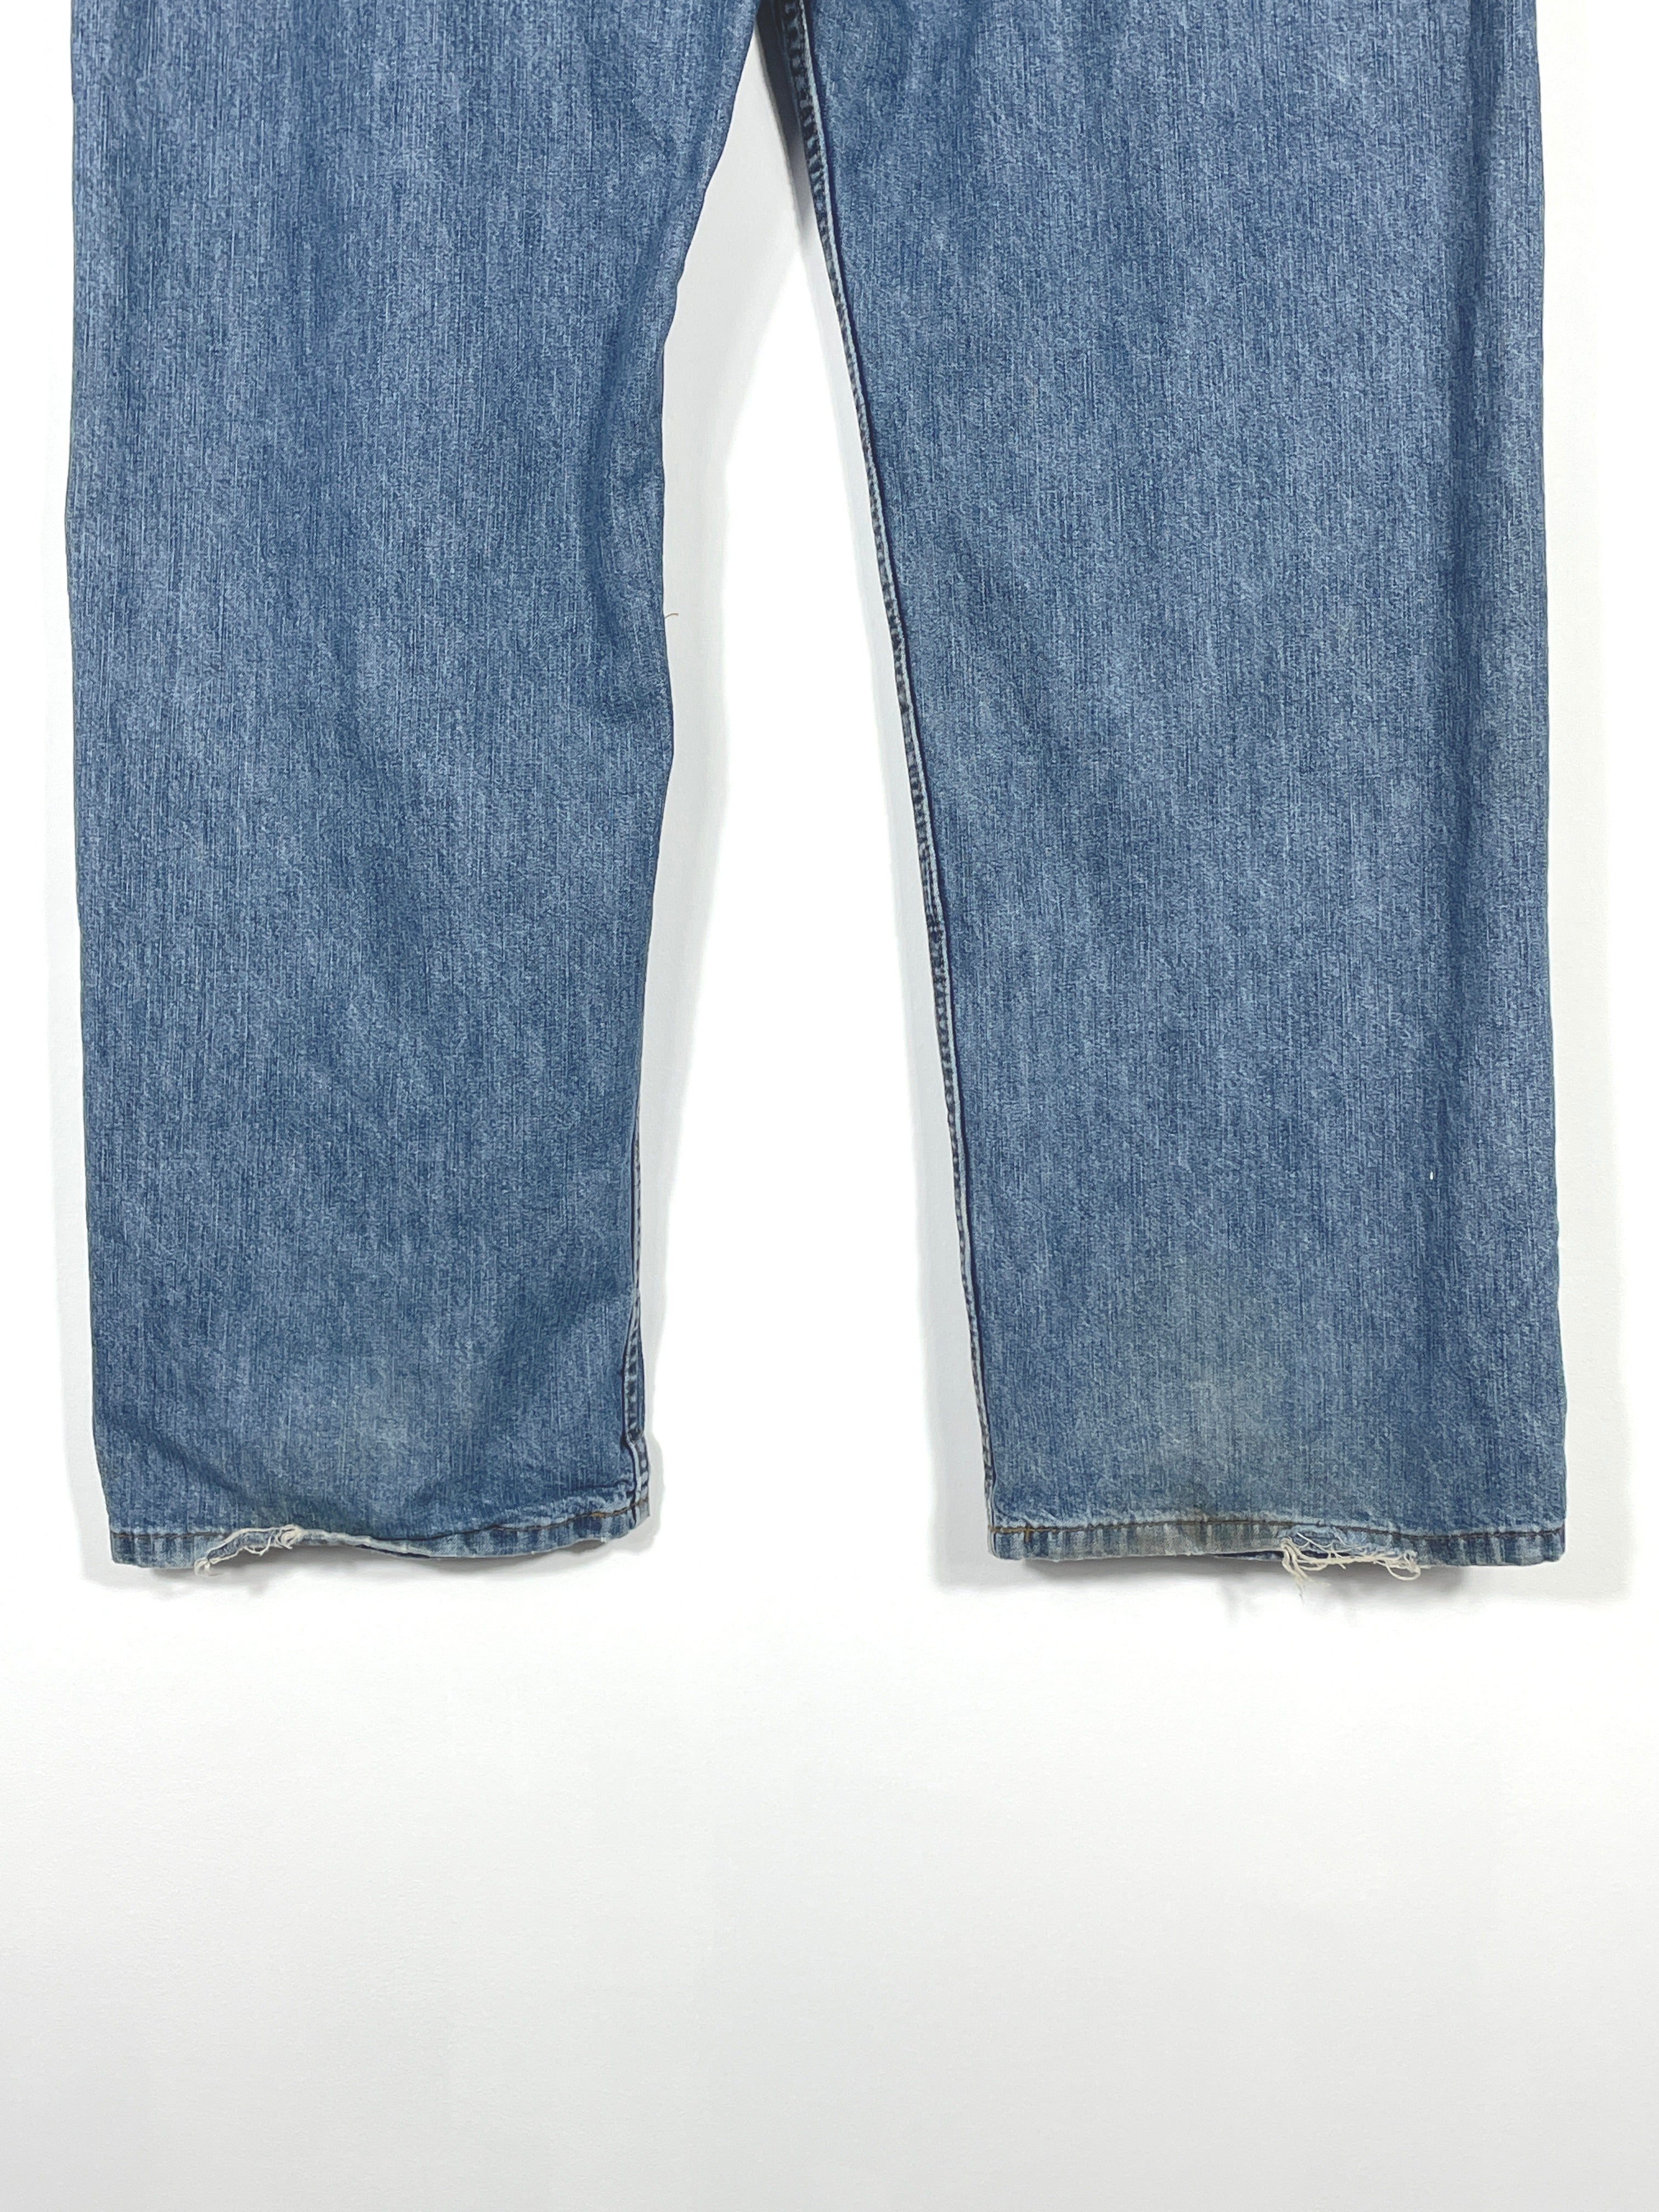 Vintage Tommy Hilfiger Baggy Jeans - Men's 38x32